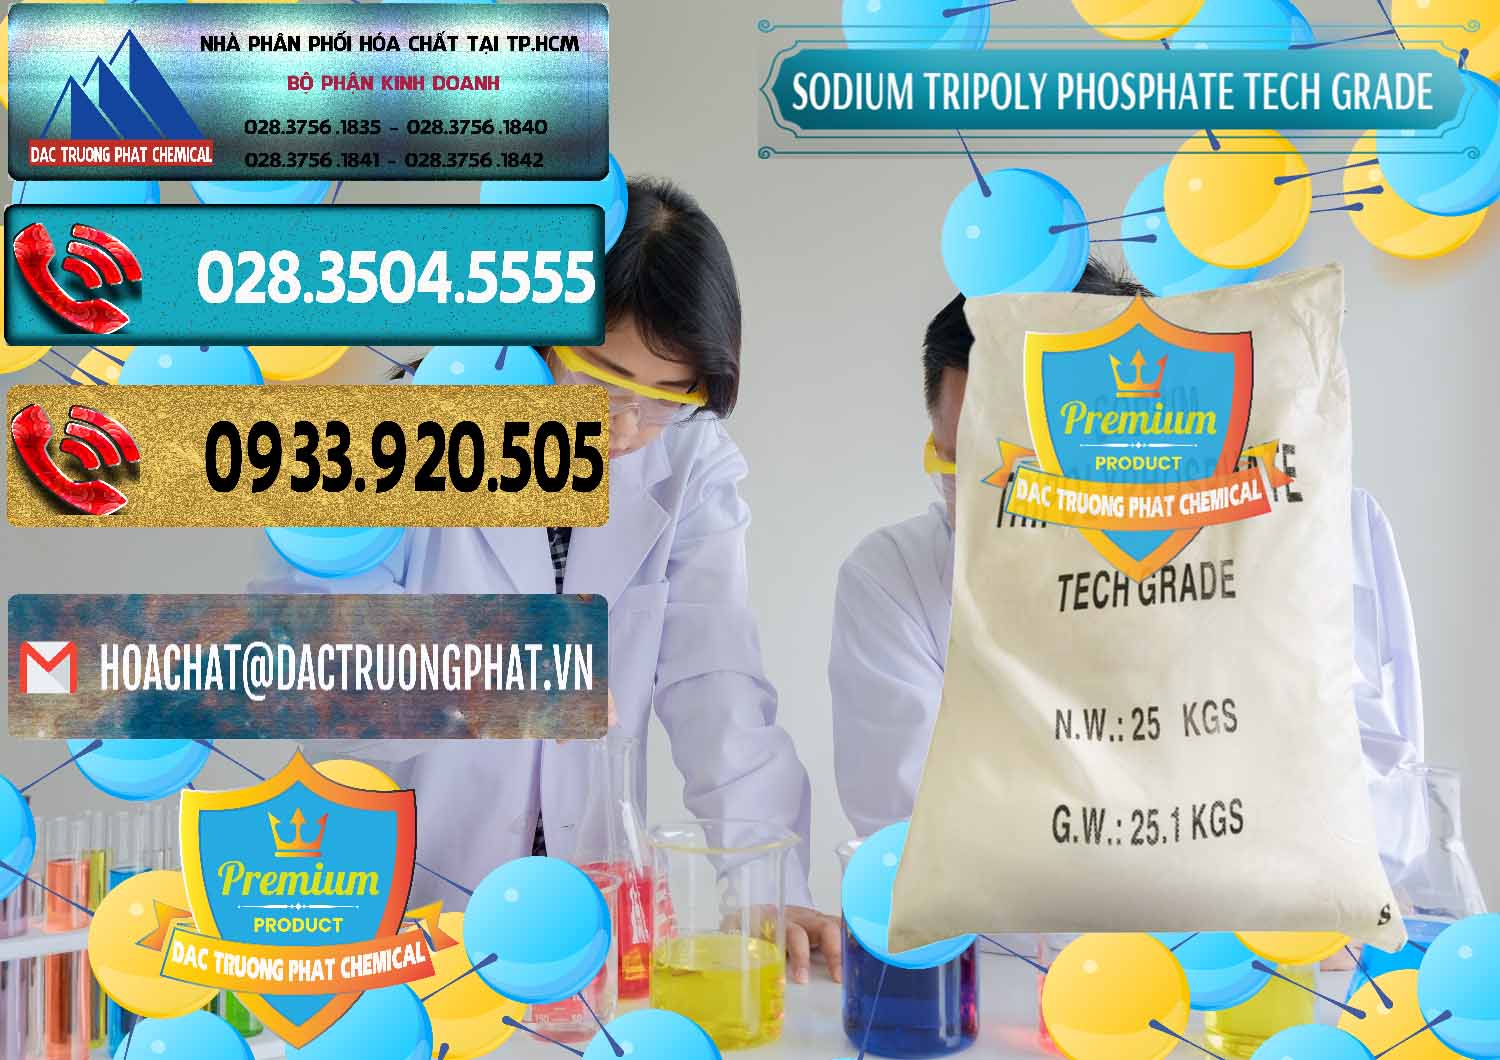 Nơi chuyên phân phối và bán Sodium Tripoly Phosphate - STPP Tech Grade Trung Quốc China - 0453 - Đơn vị nhập khẩu & cung cấp hóa chất tại TP.HCM - hoachatdetnhuom.com